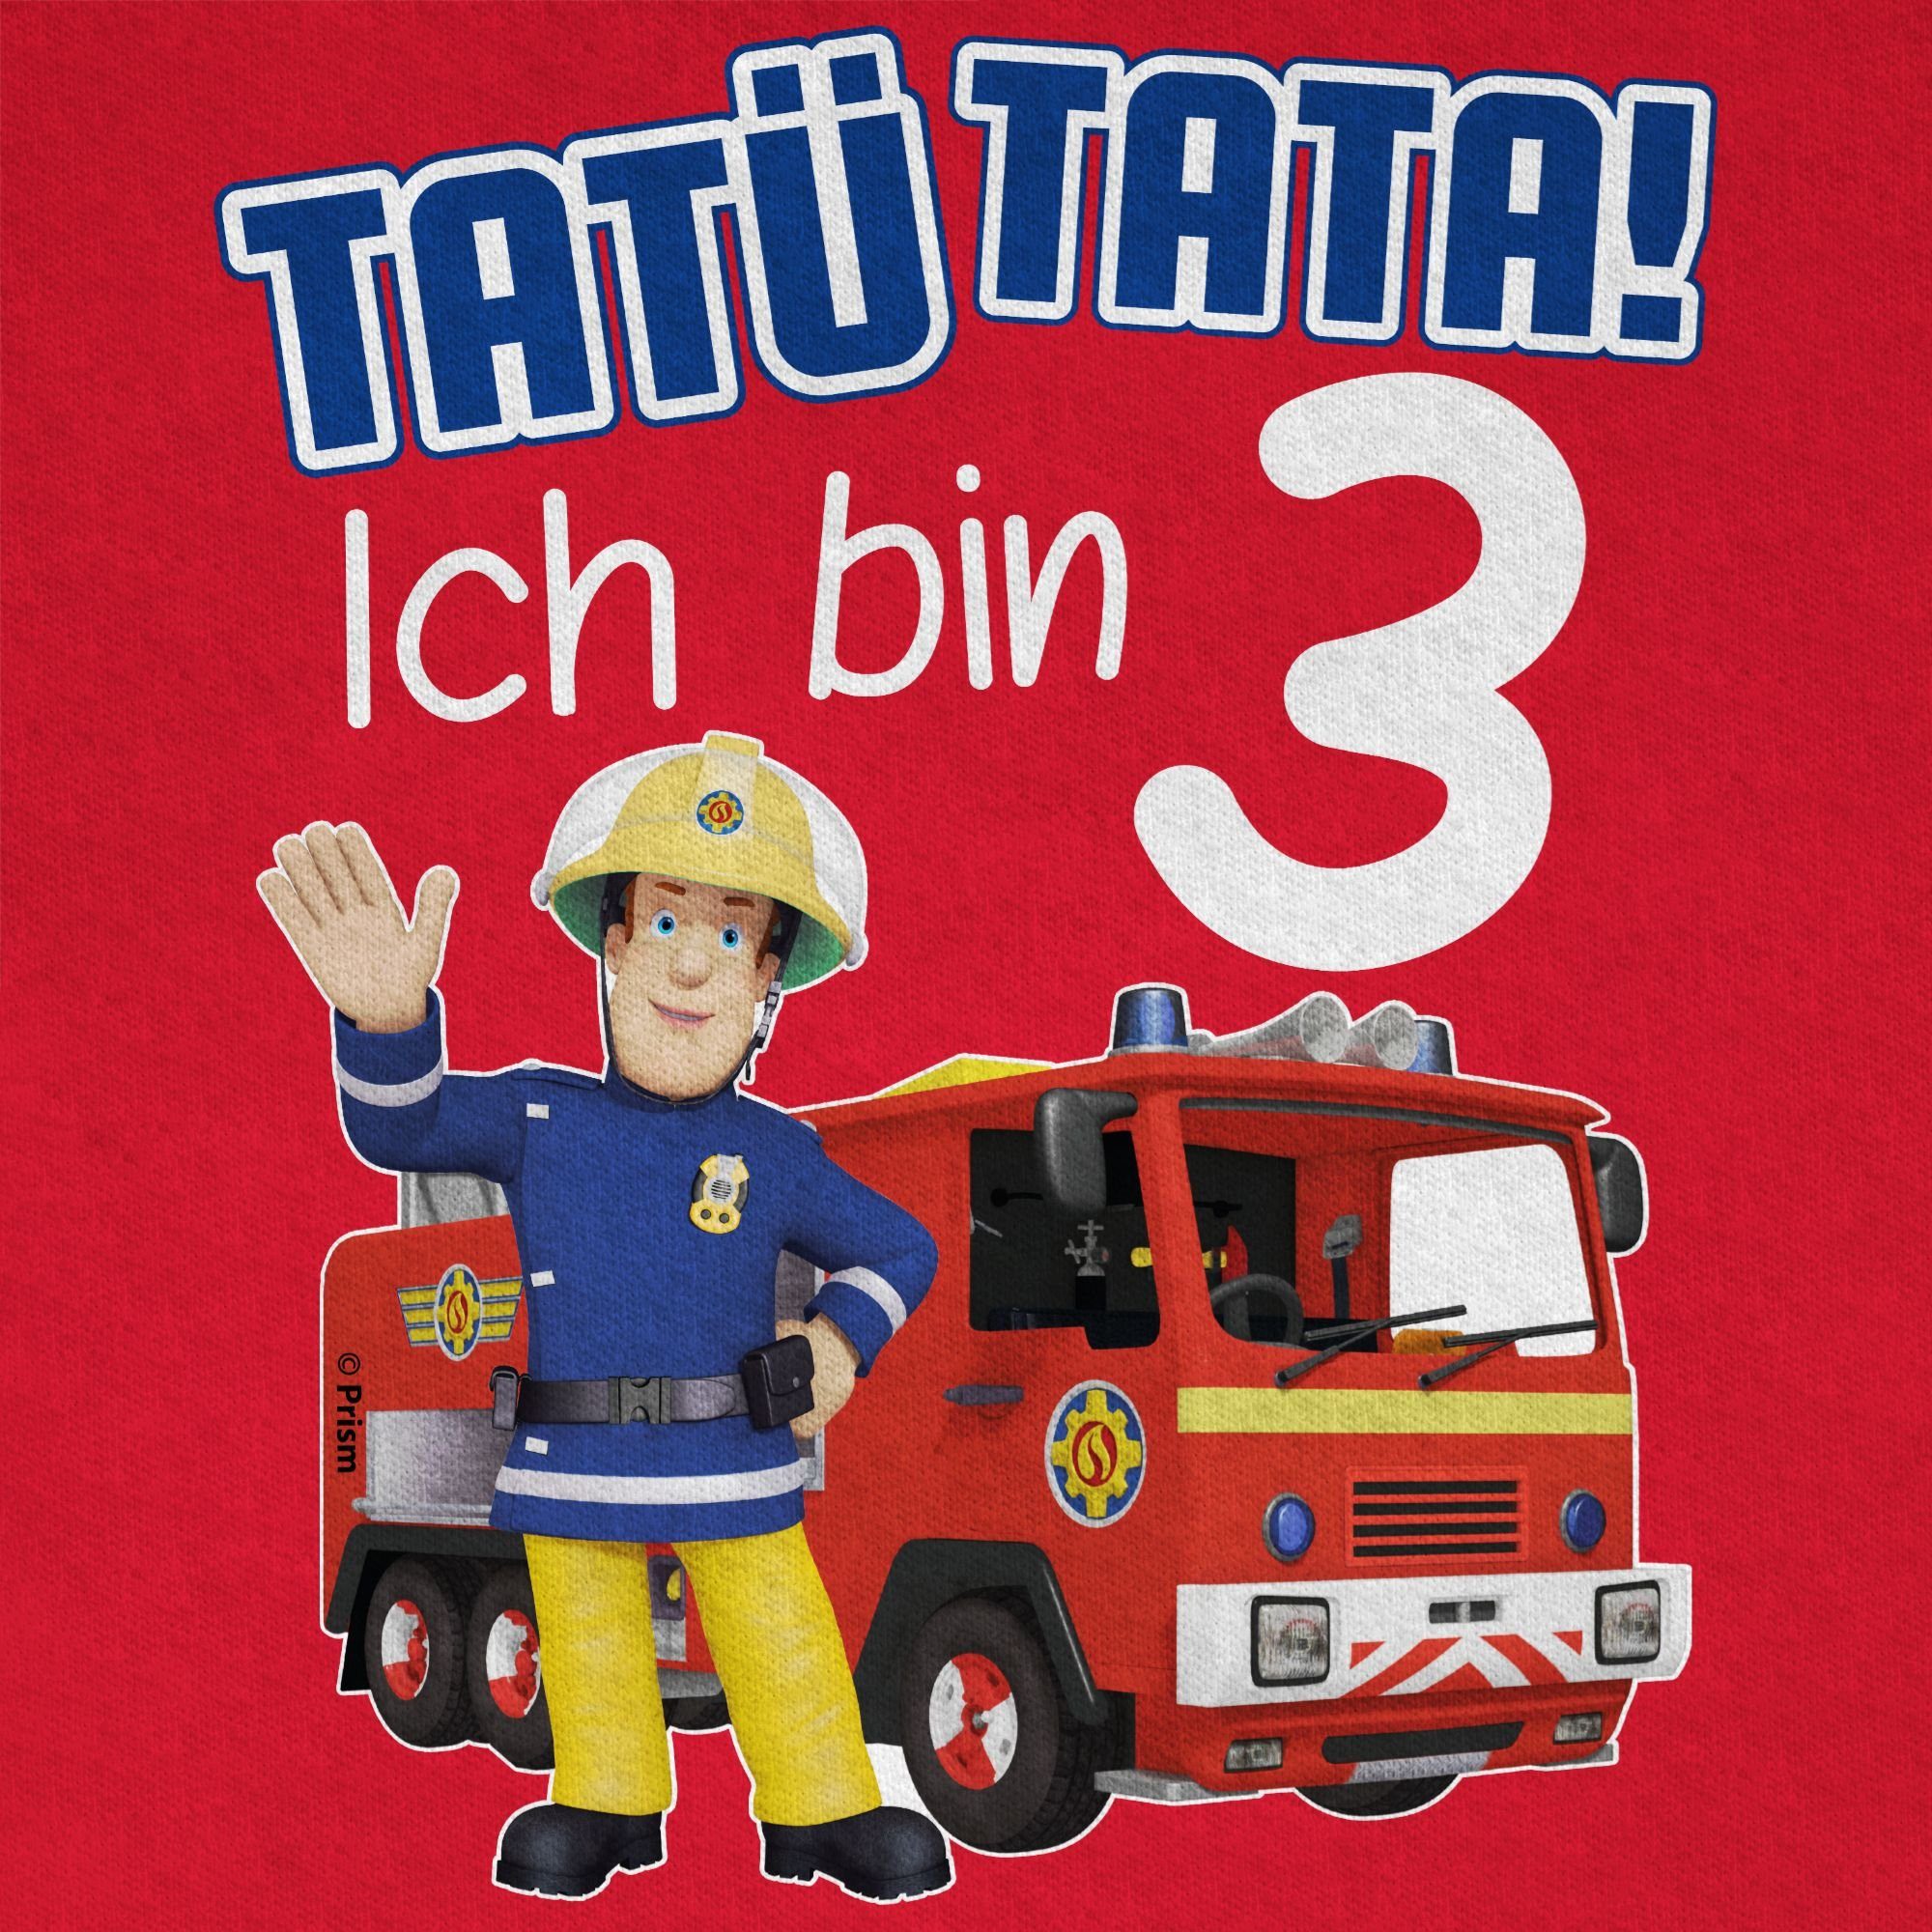 01 Rot Tata! Ich Feuerwehrmann Sam bin Jungen Shirtracer Tatü 3 T-Shirt